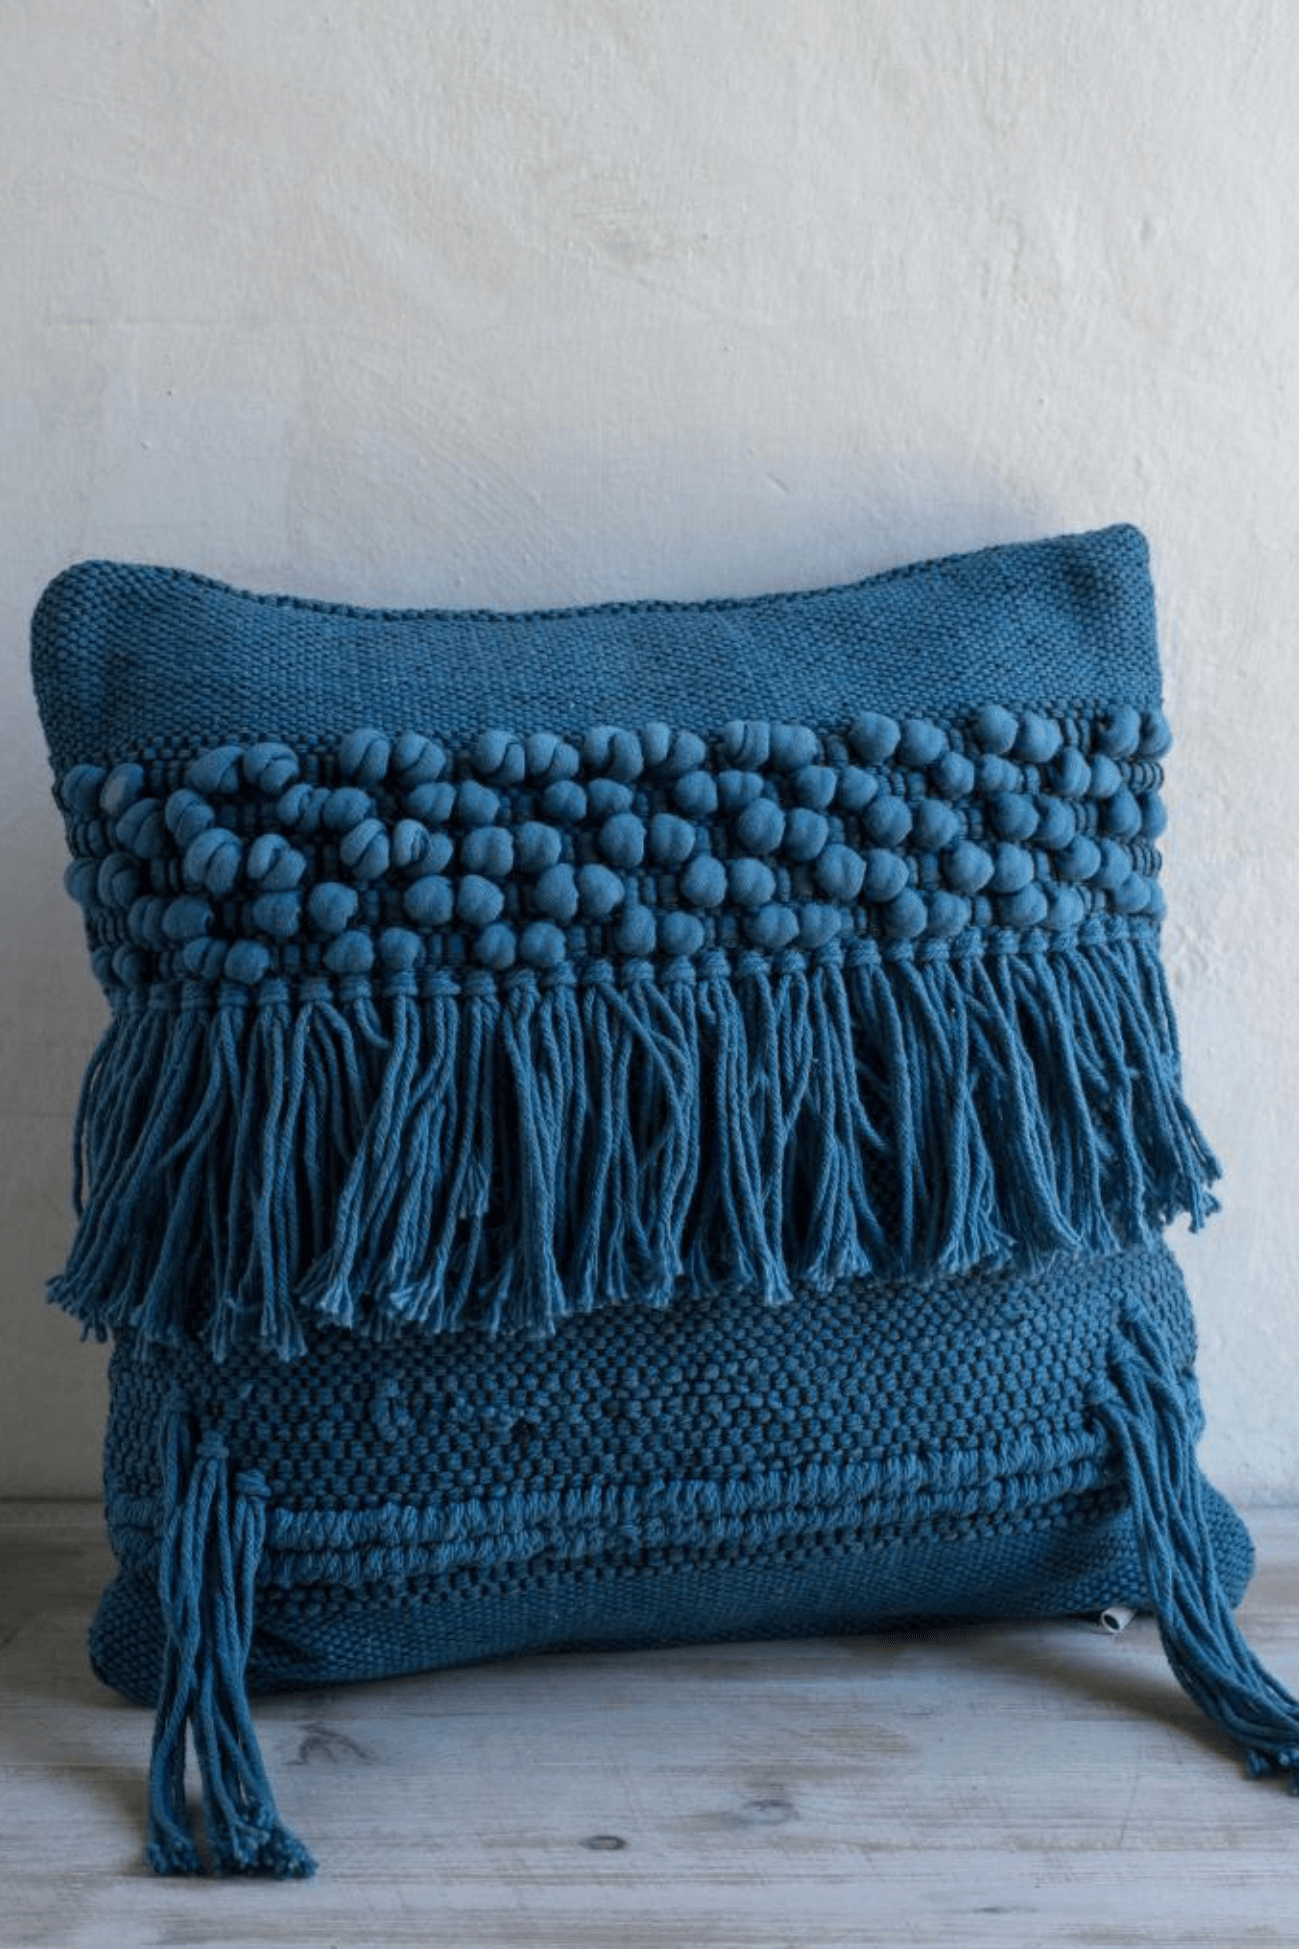 Luxe Lodge Rebi Cuscino arredo blu imbottito in cotone con frange in stile boho